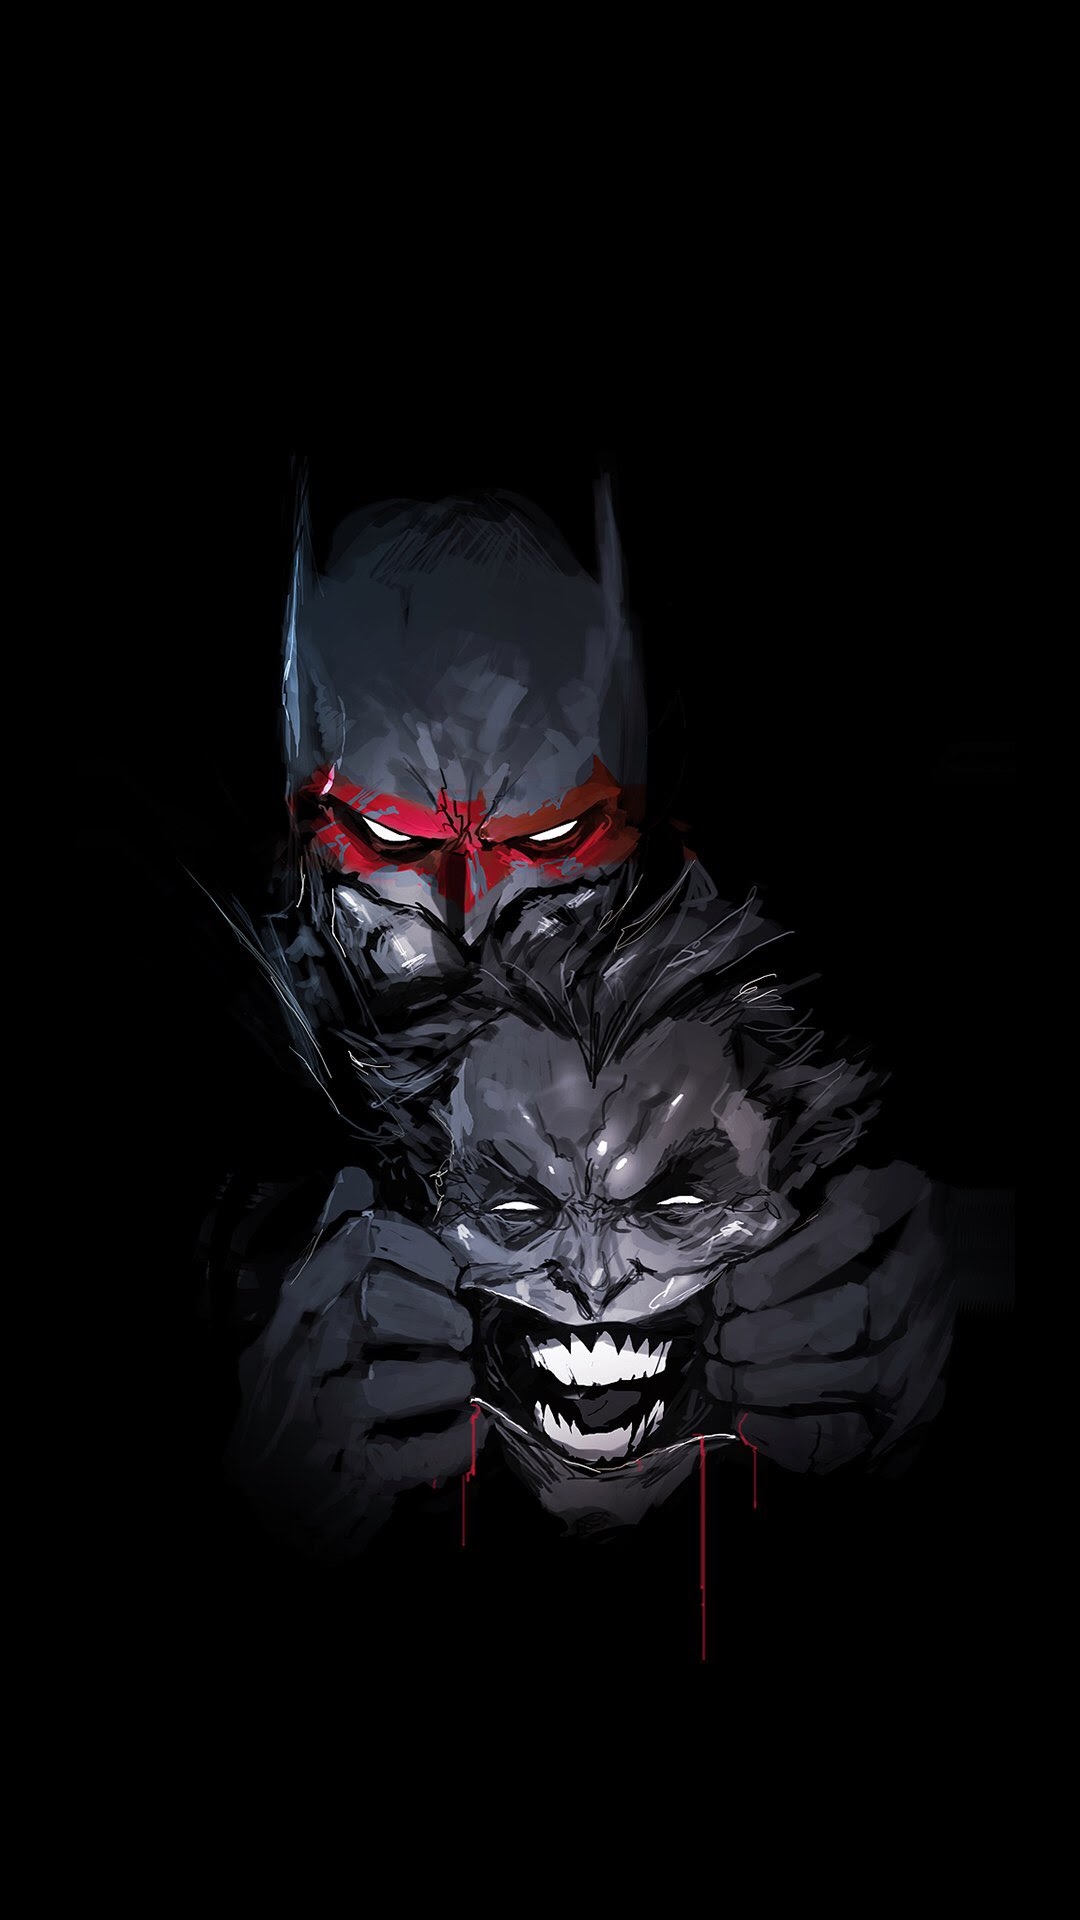 DC动漫人物蝙蝠侠和死敌小丑的创意手绘插画手机壁纸